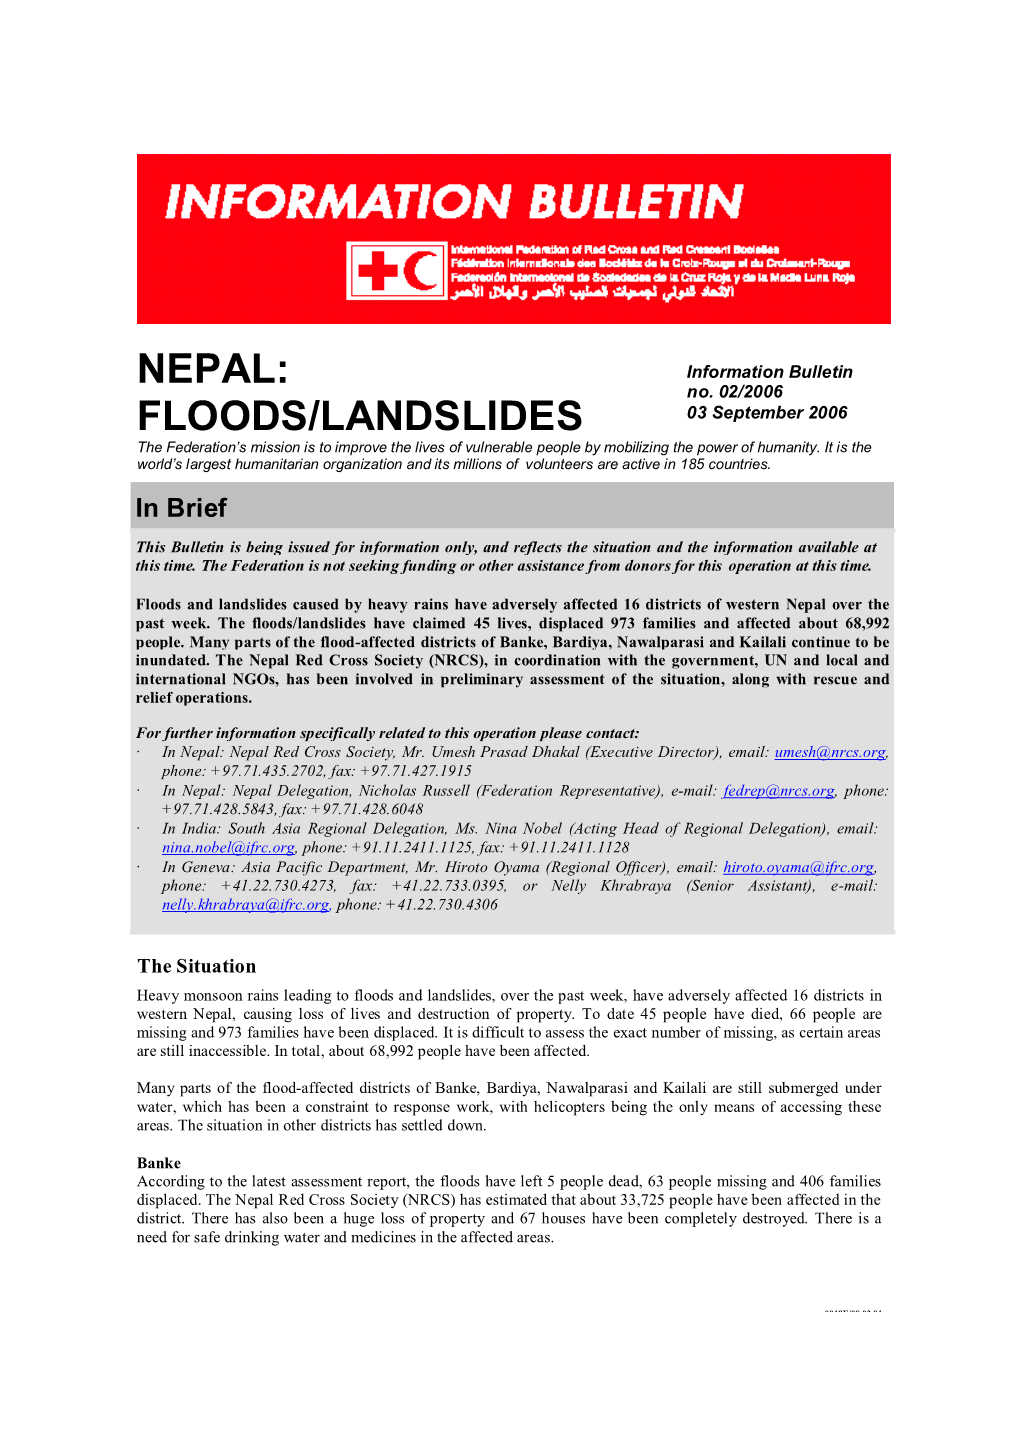 Nepal: Floods/Landslides; Information Bulletin No